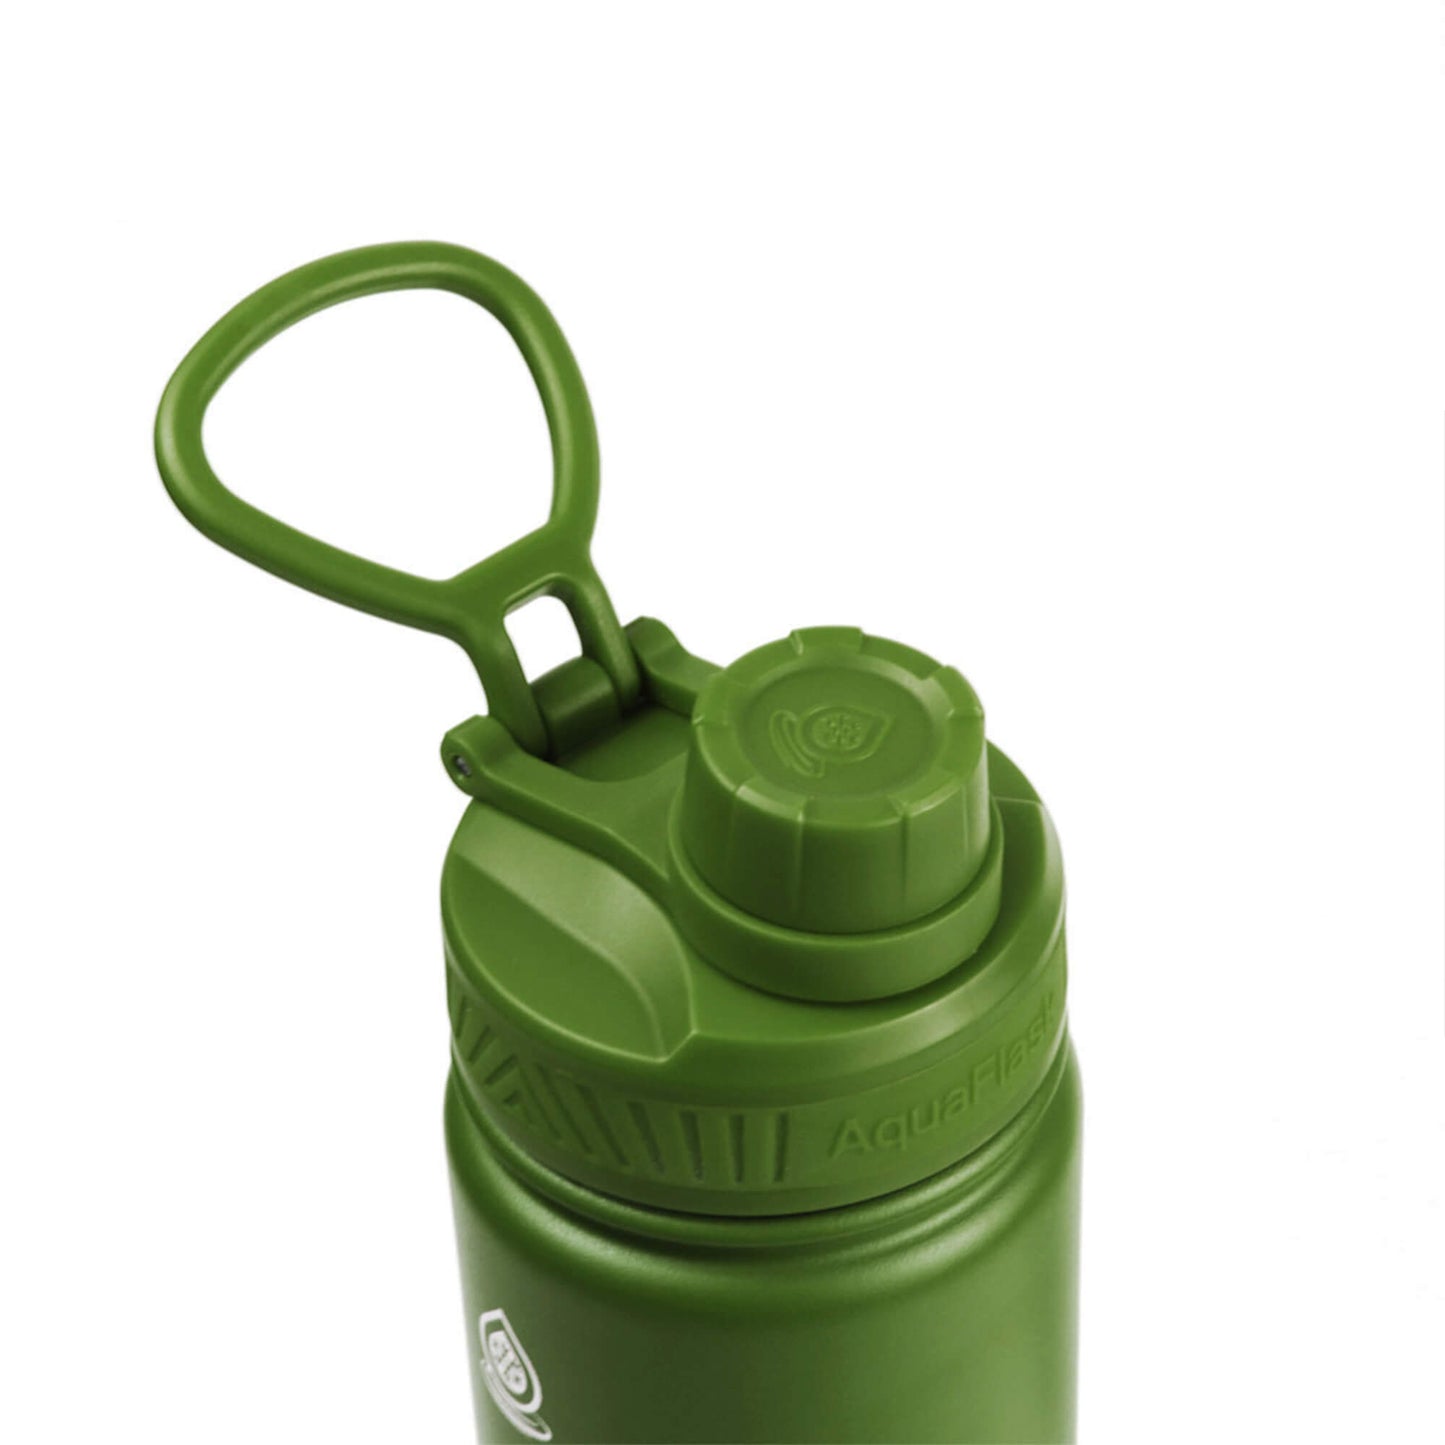 Aquaflask Original Vacuum Insulated Water Bottles 530ml (18oz)